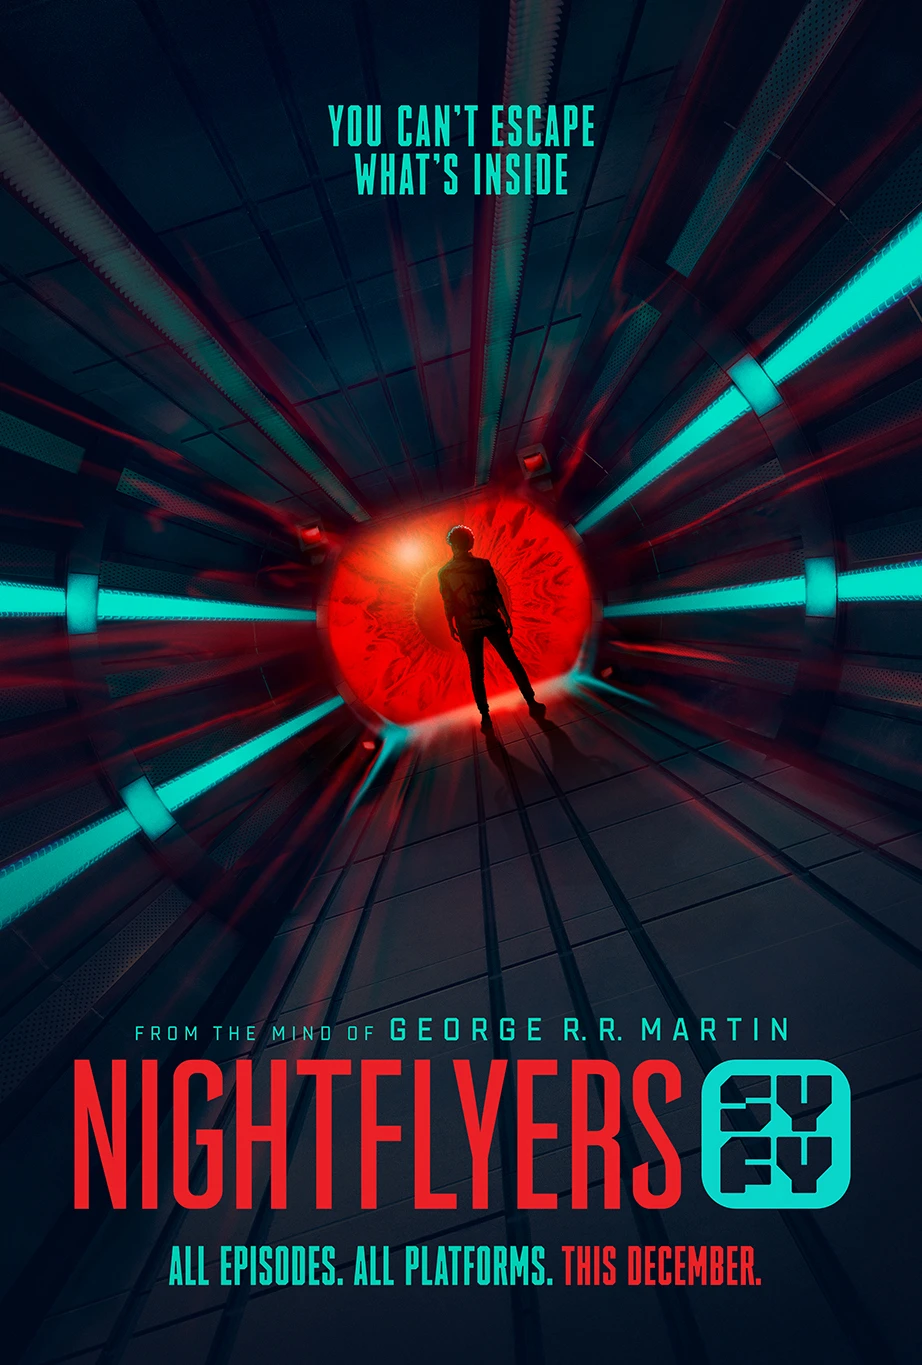 Con Tàu Nightflyers (Phần 1) | Nightflyers (Season 1) (2018)